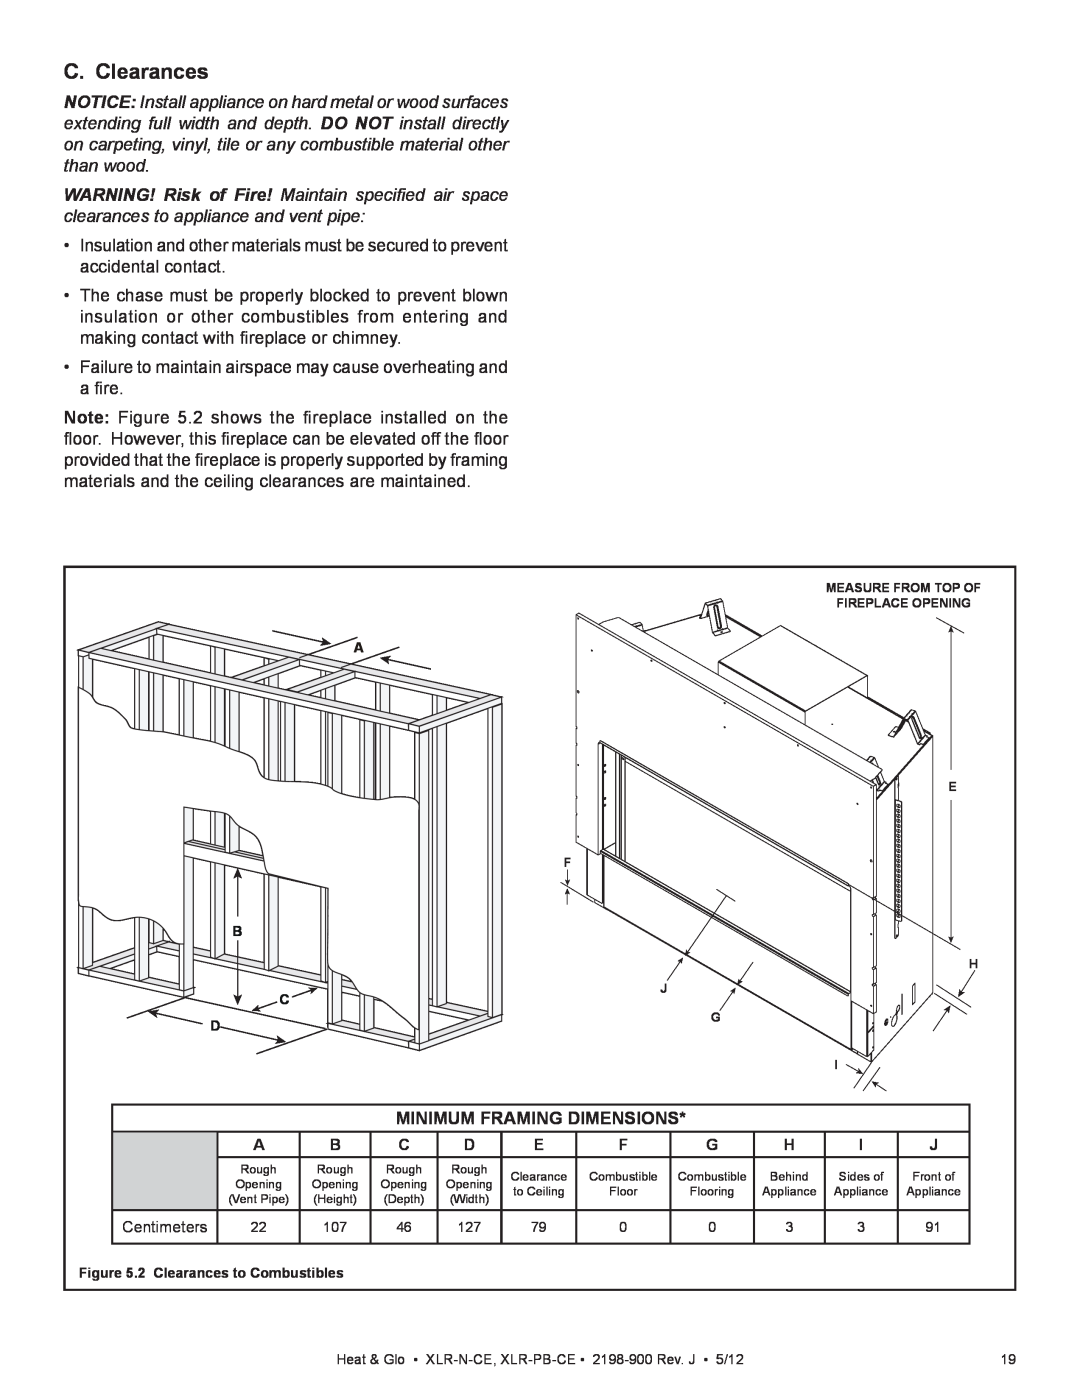 Heat & Glo LifeStyle XLR-PB-CE, XLR-N-CE manual C. Clearances, Minimum Framing Dimensions 